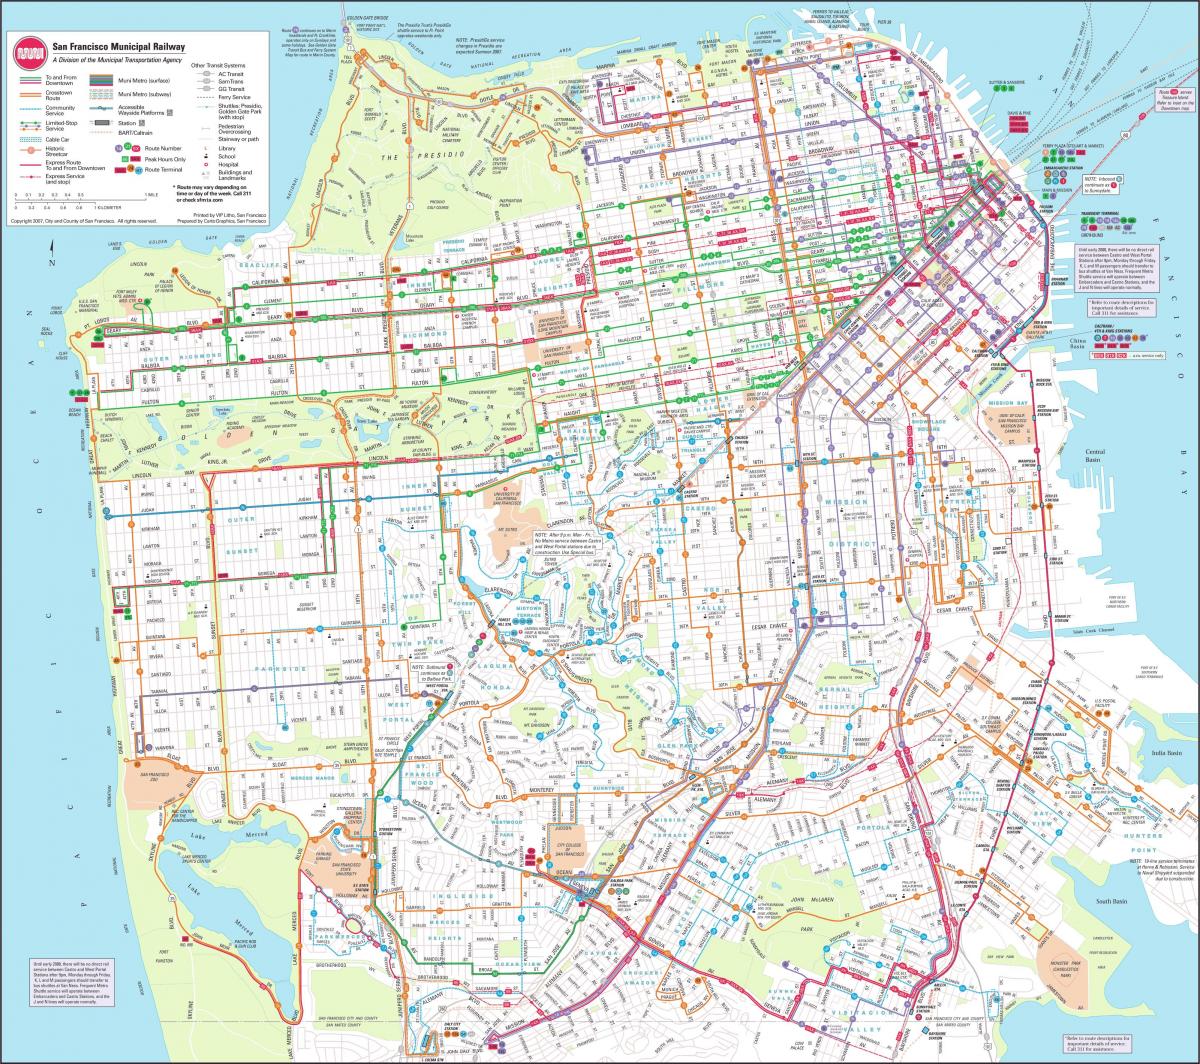 Карта Сан-Франциско муниципальная железная дорога